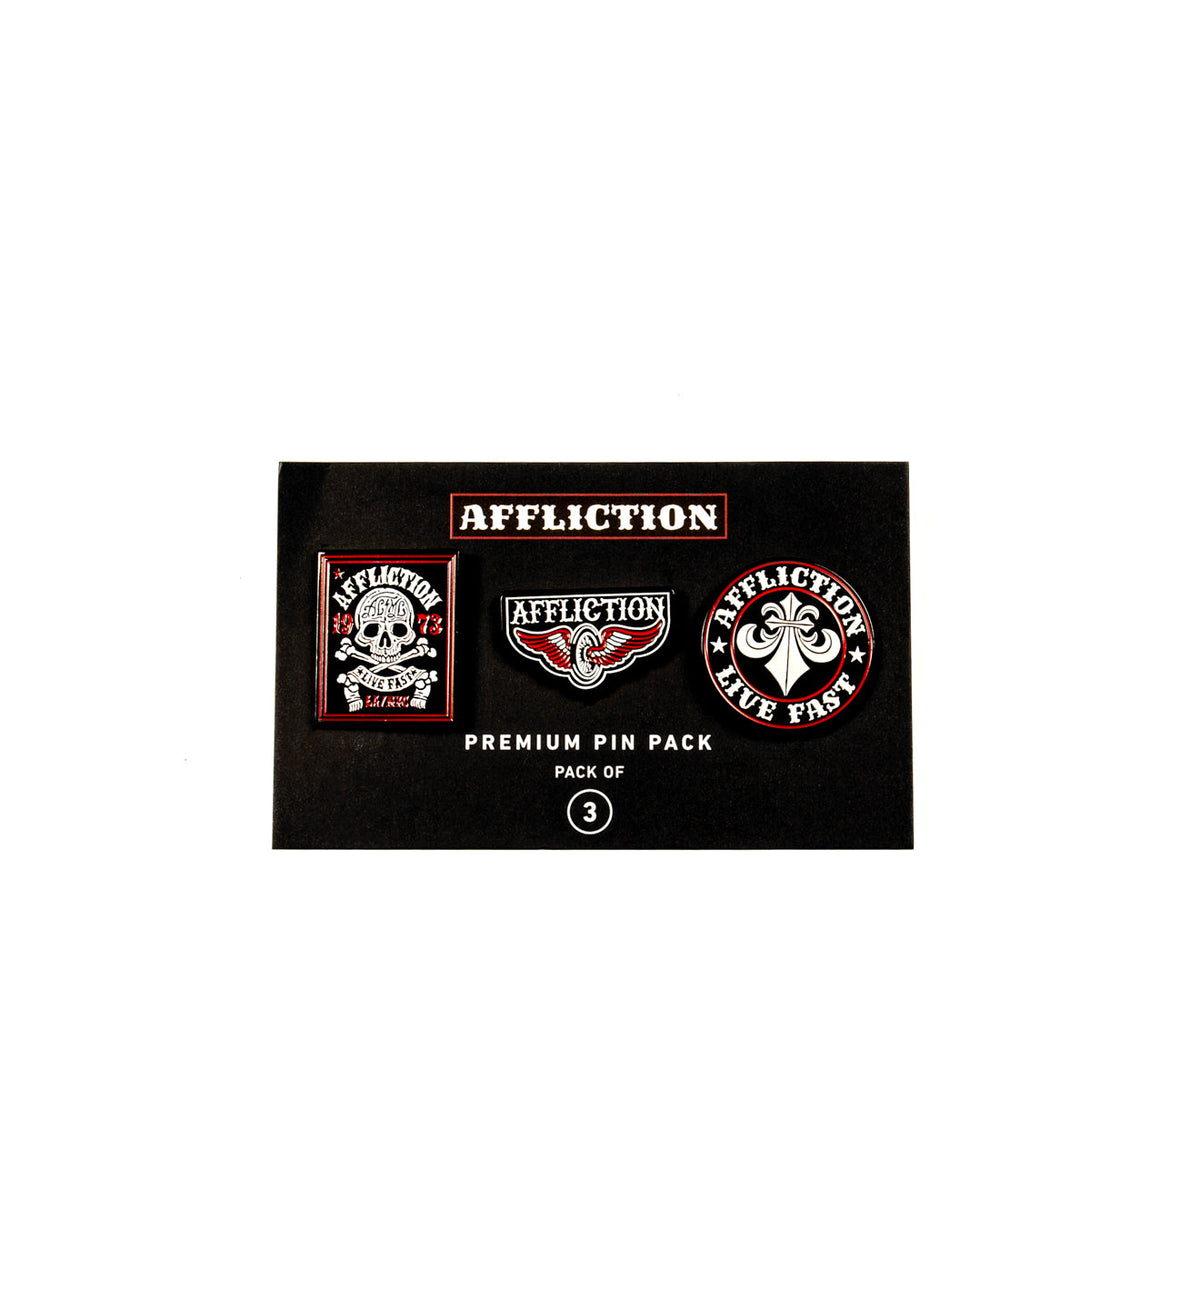 Affliction Premium Pin Pack